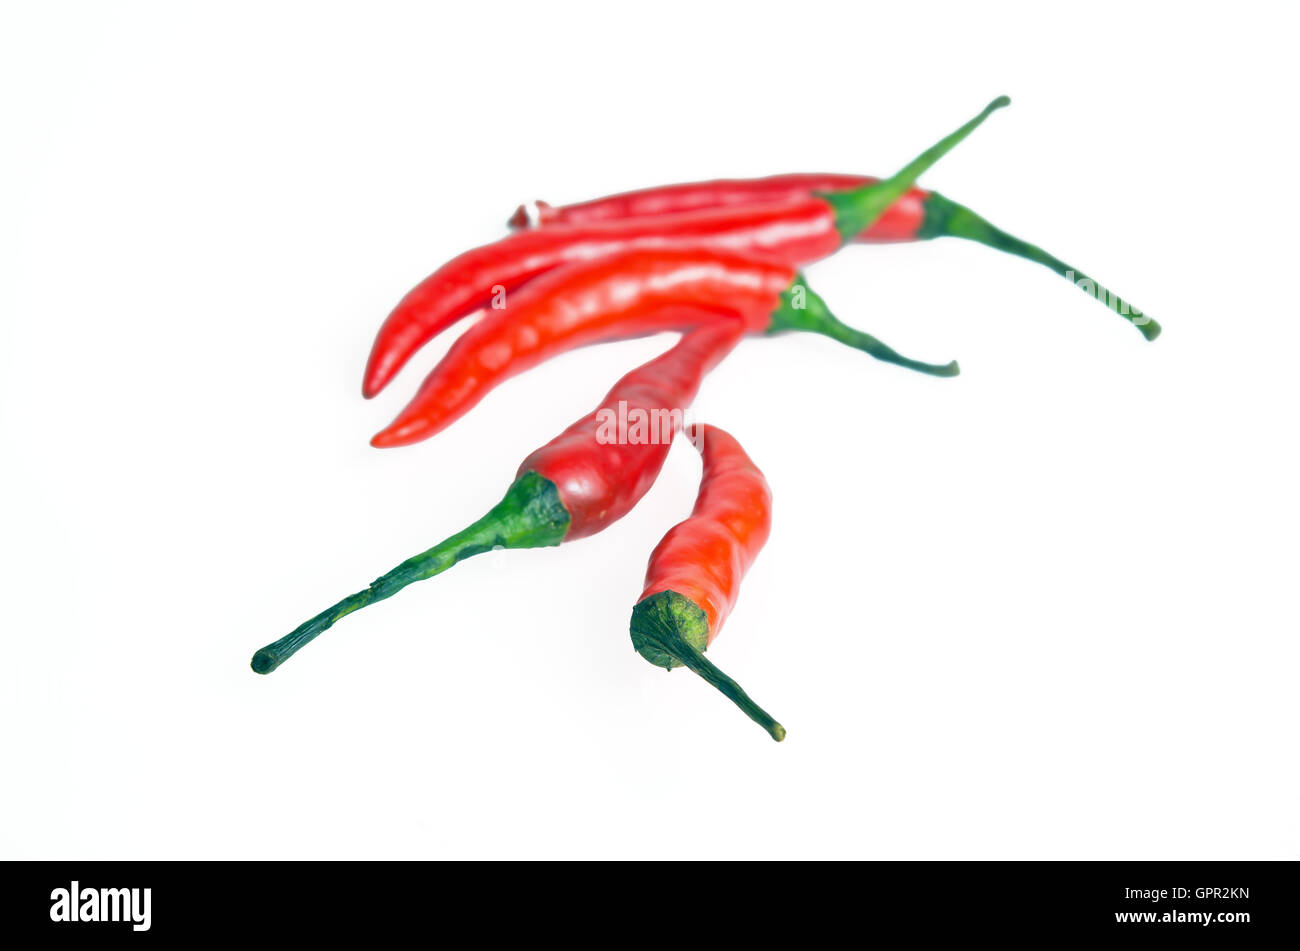 Red hot spicy chili pepper (Also named as chile pepper, Capsicum annuum, Capsicum frutescens, Capsicum chinense, Capsicum Chili, Stock Photo